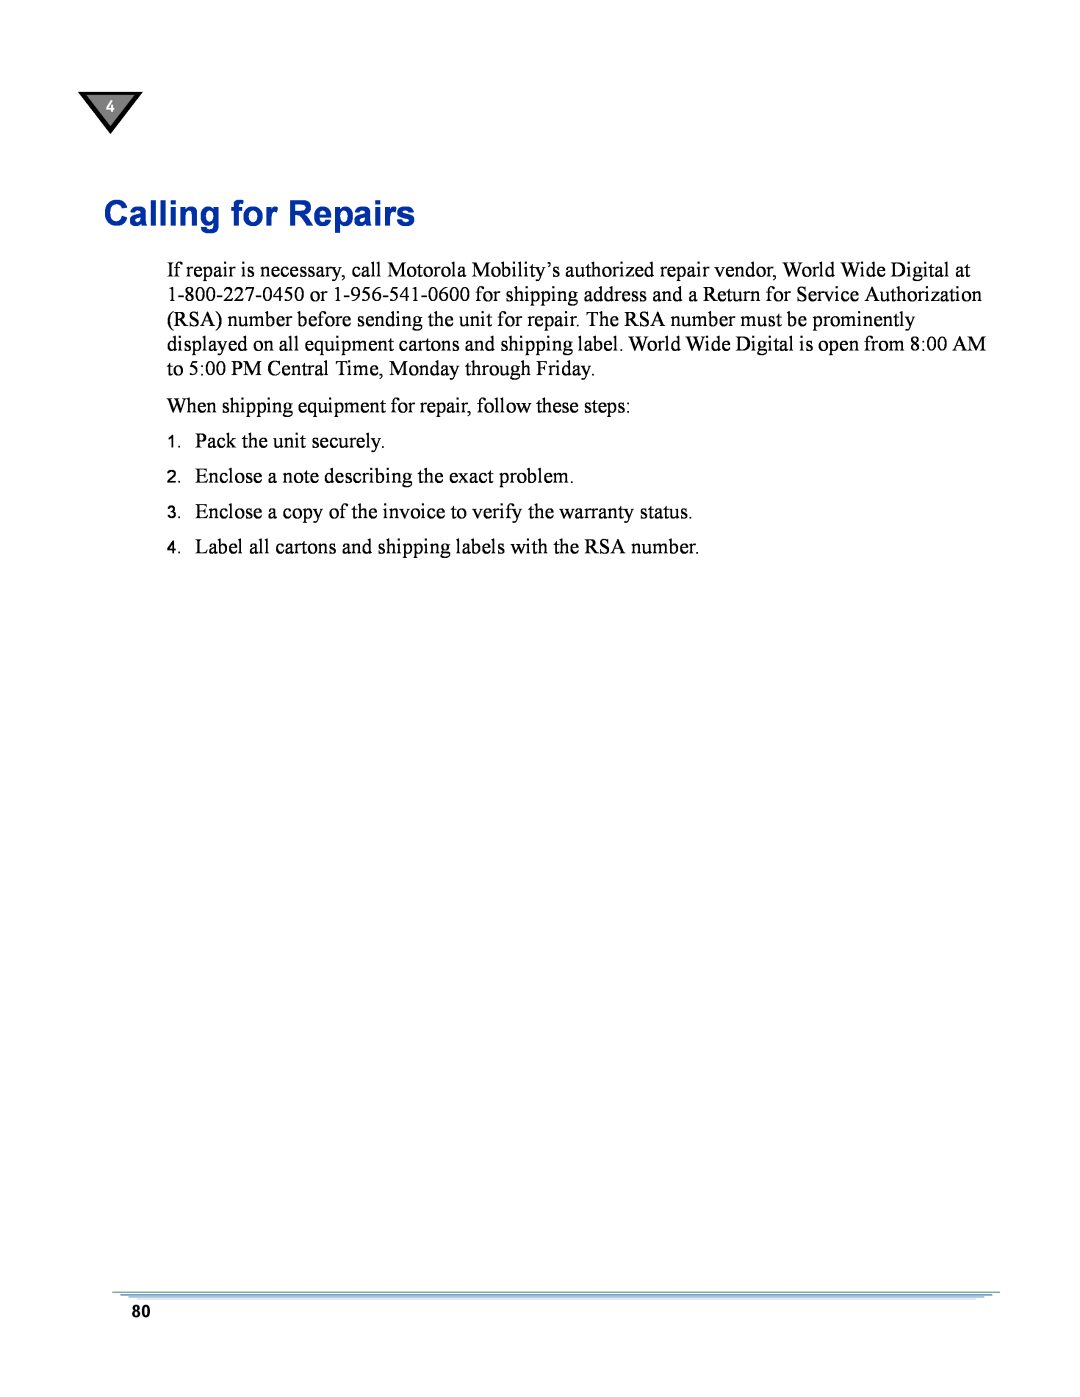 Motorola DSR-6400 manual Calling for Repairs 